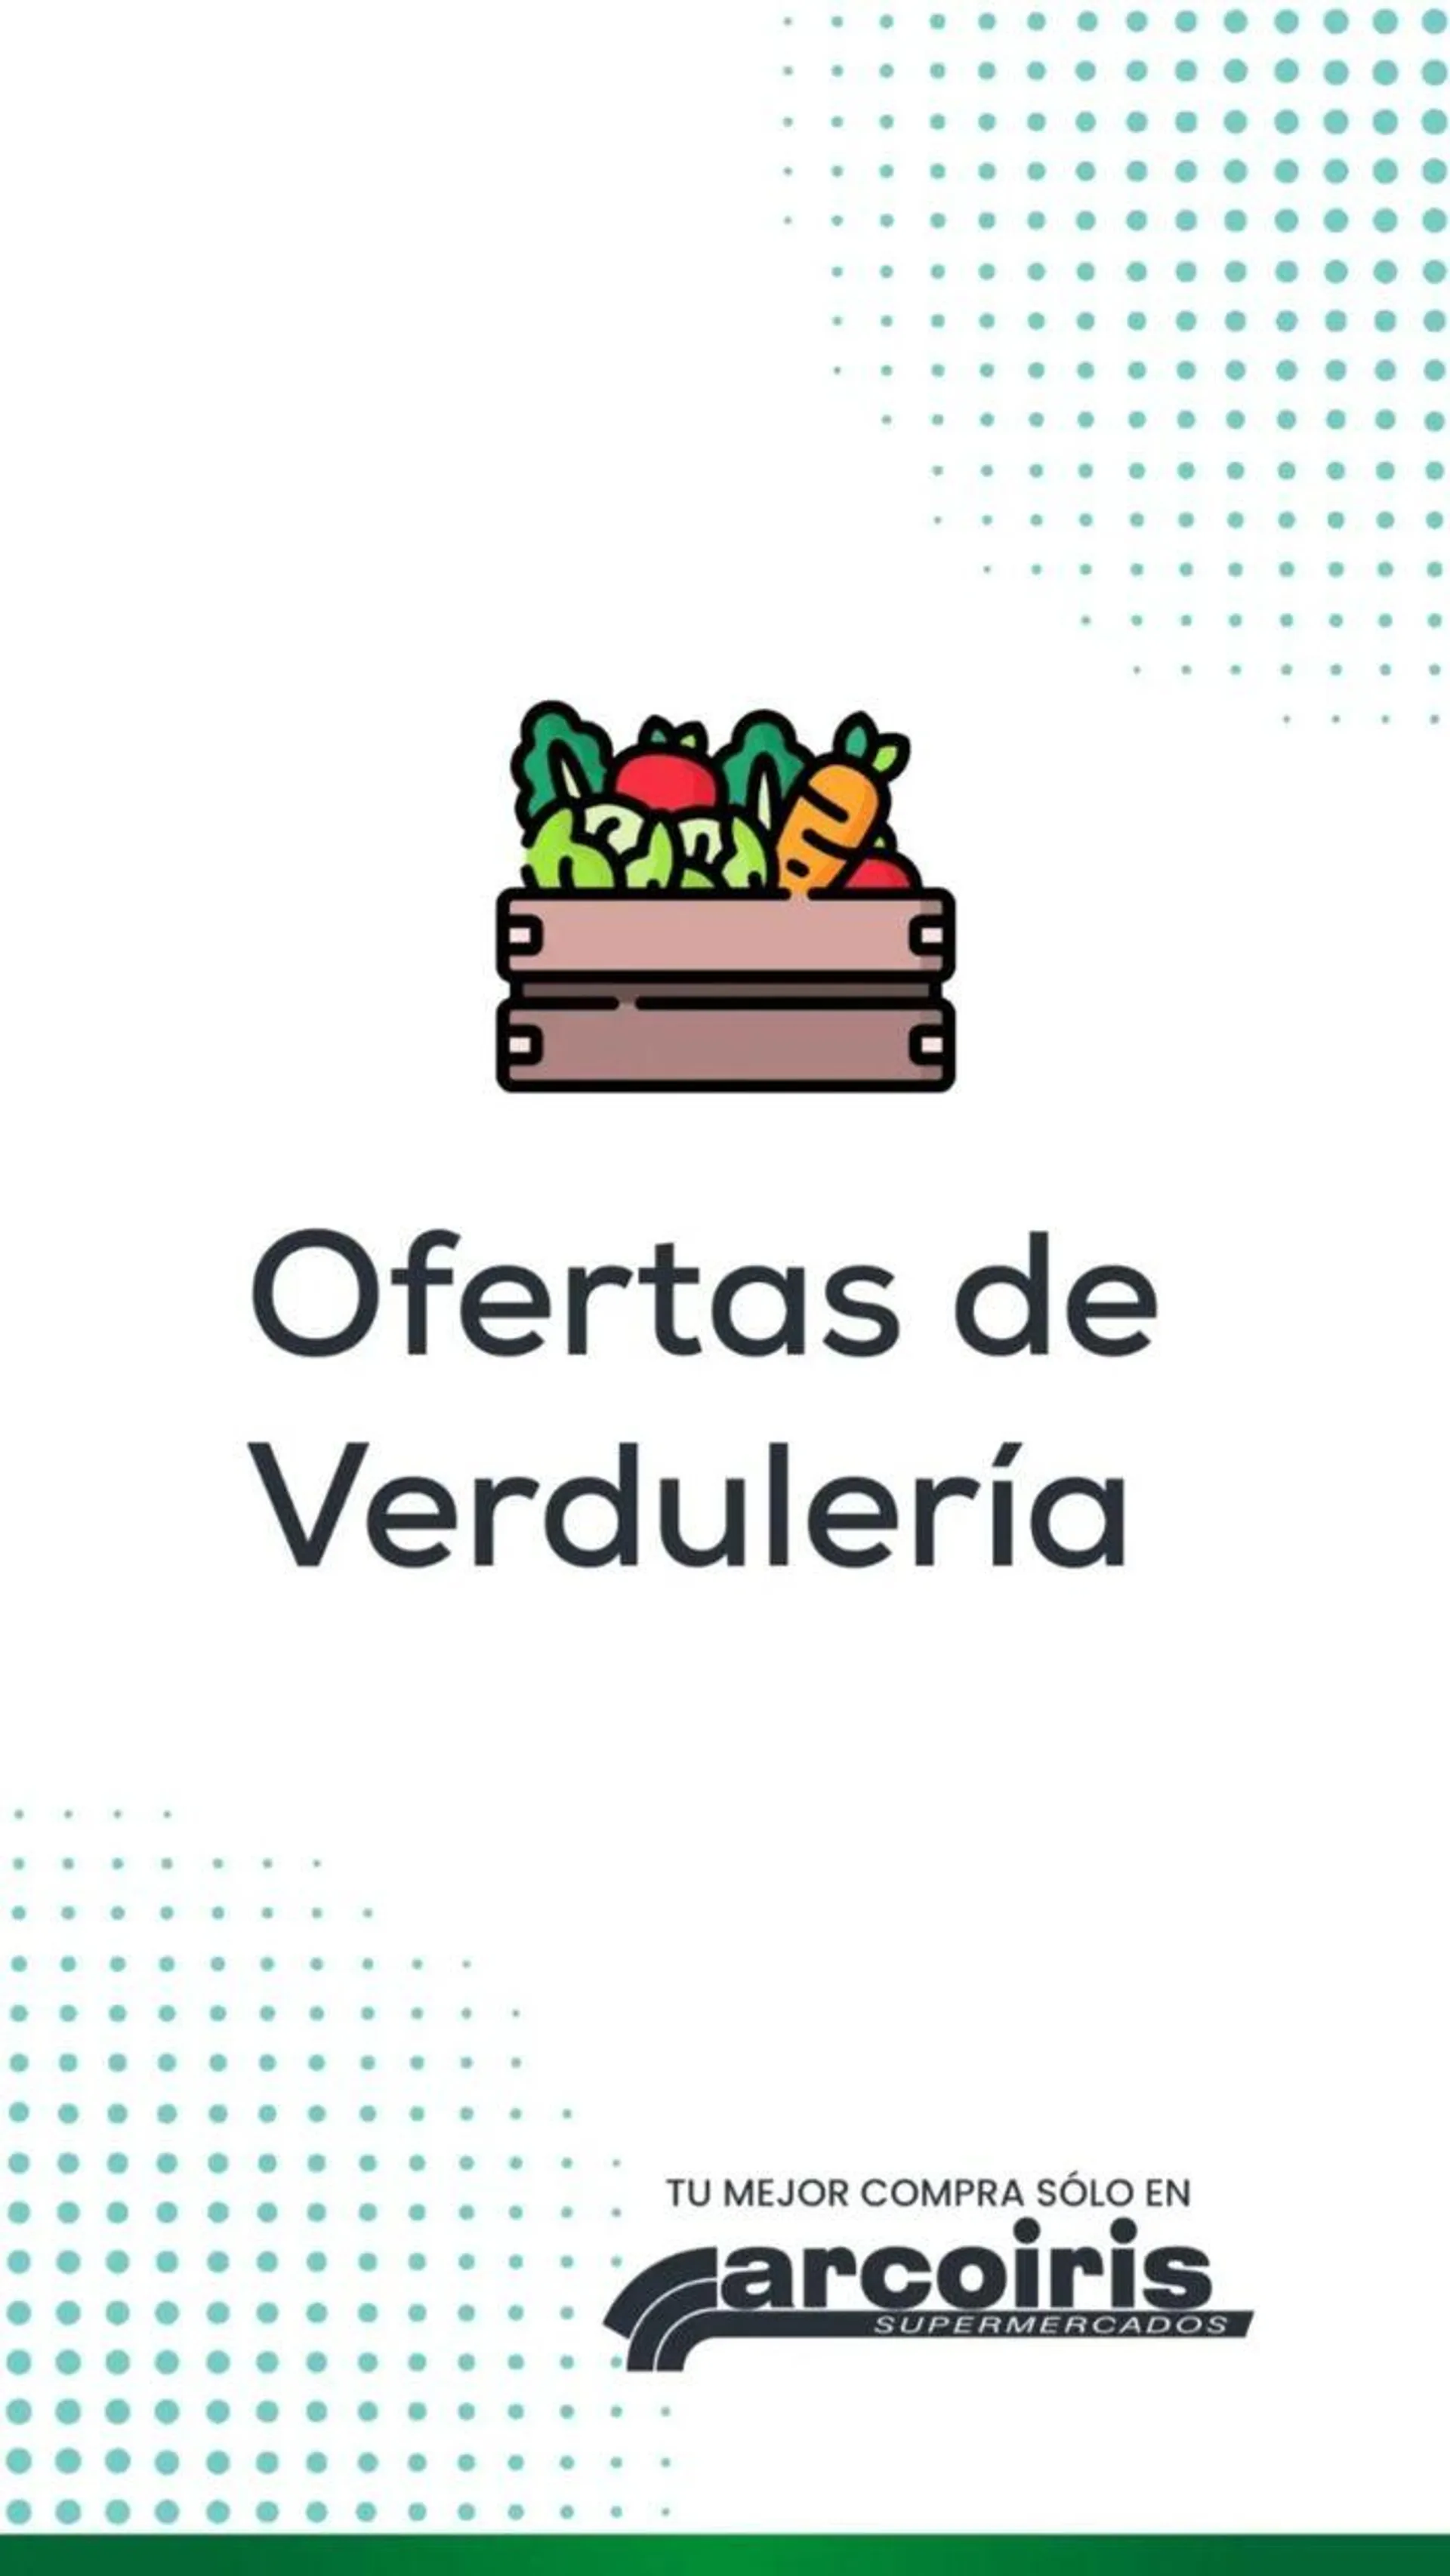 Ofertas de Verdulería Arcoiris - 1